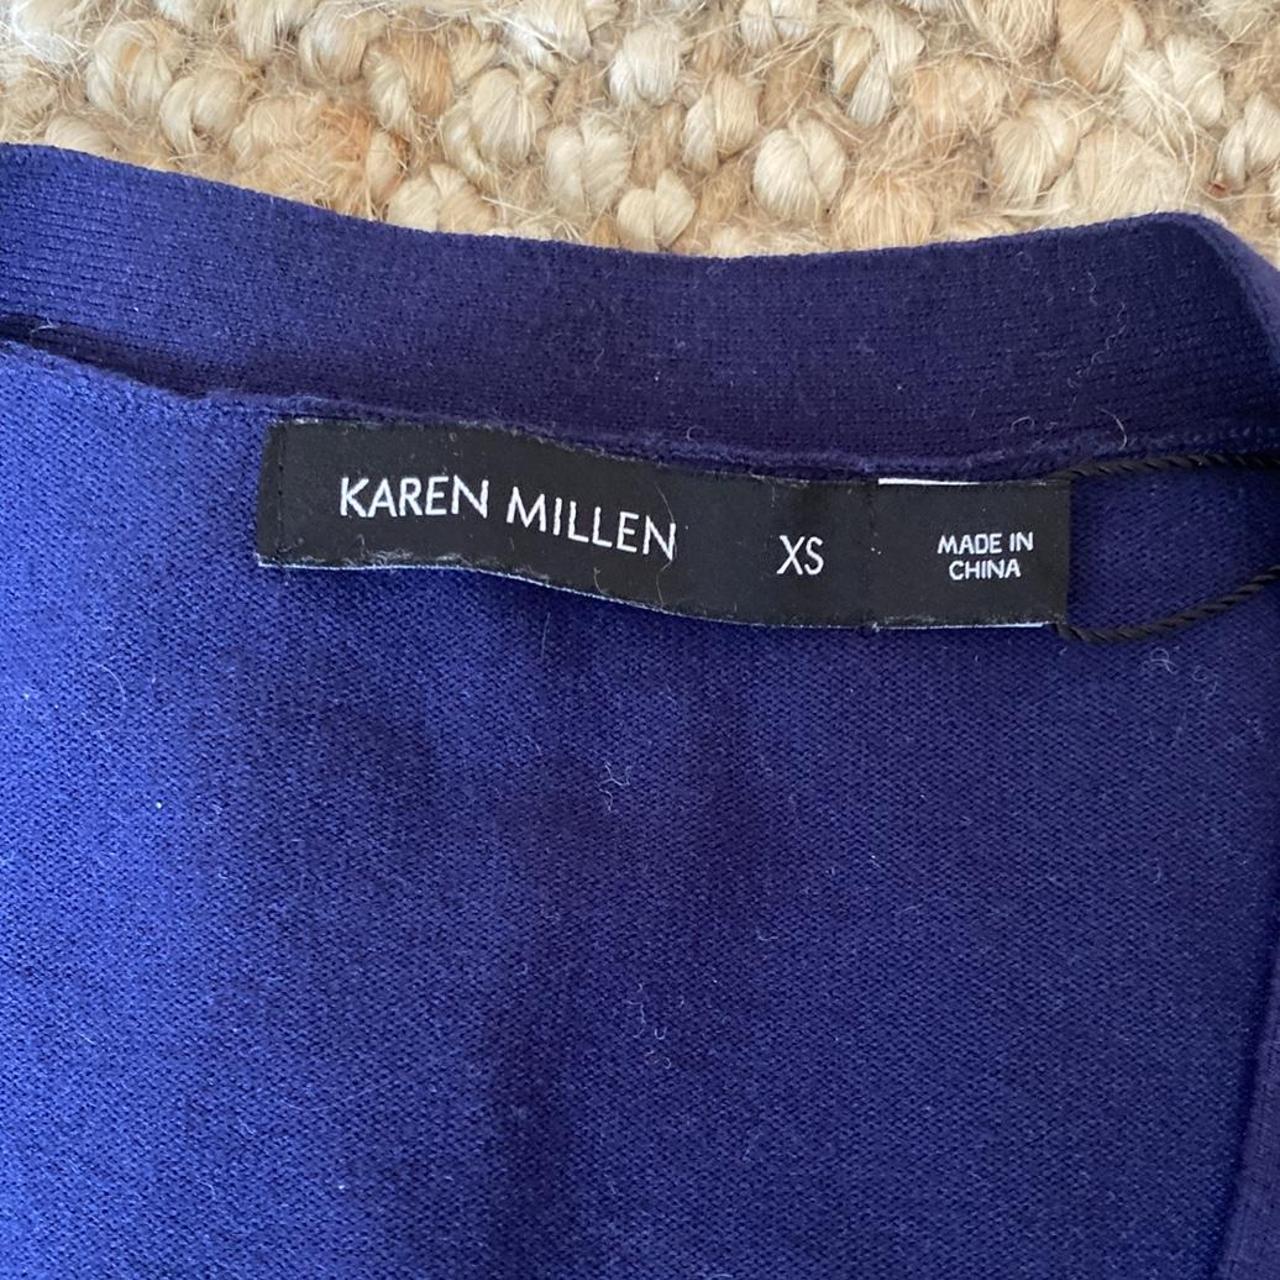 Karen Millen cardigan 💙 Size XS - Depop